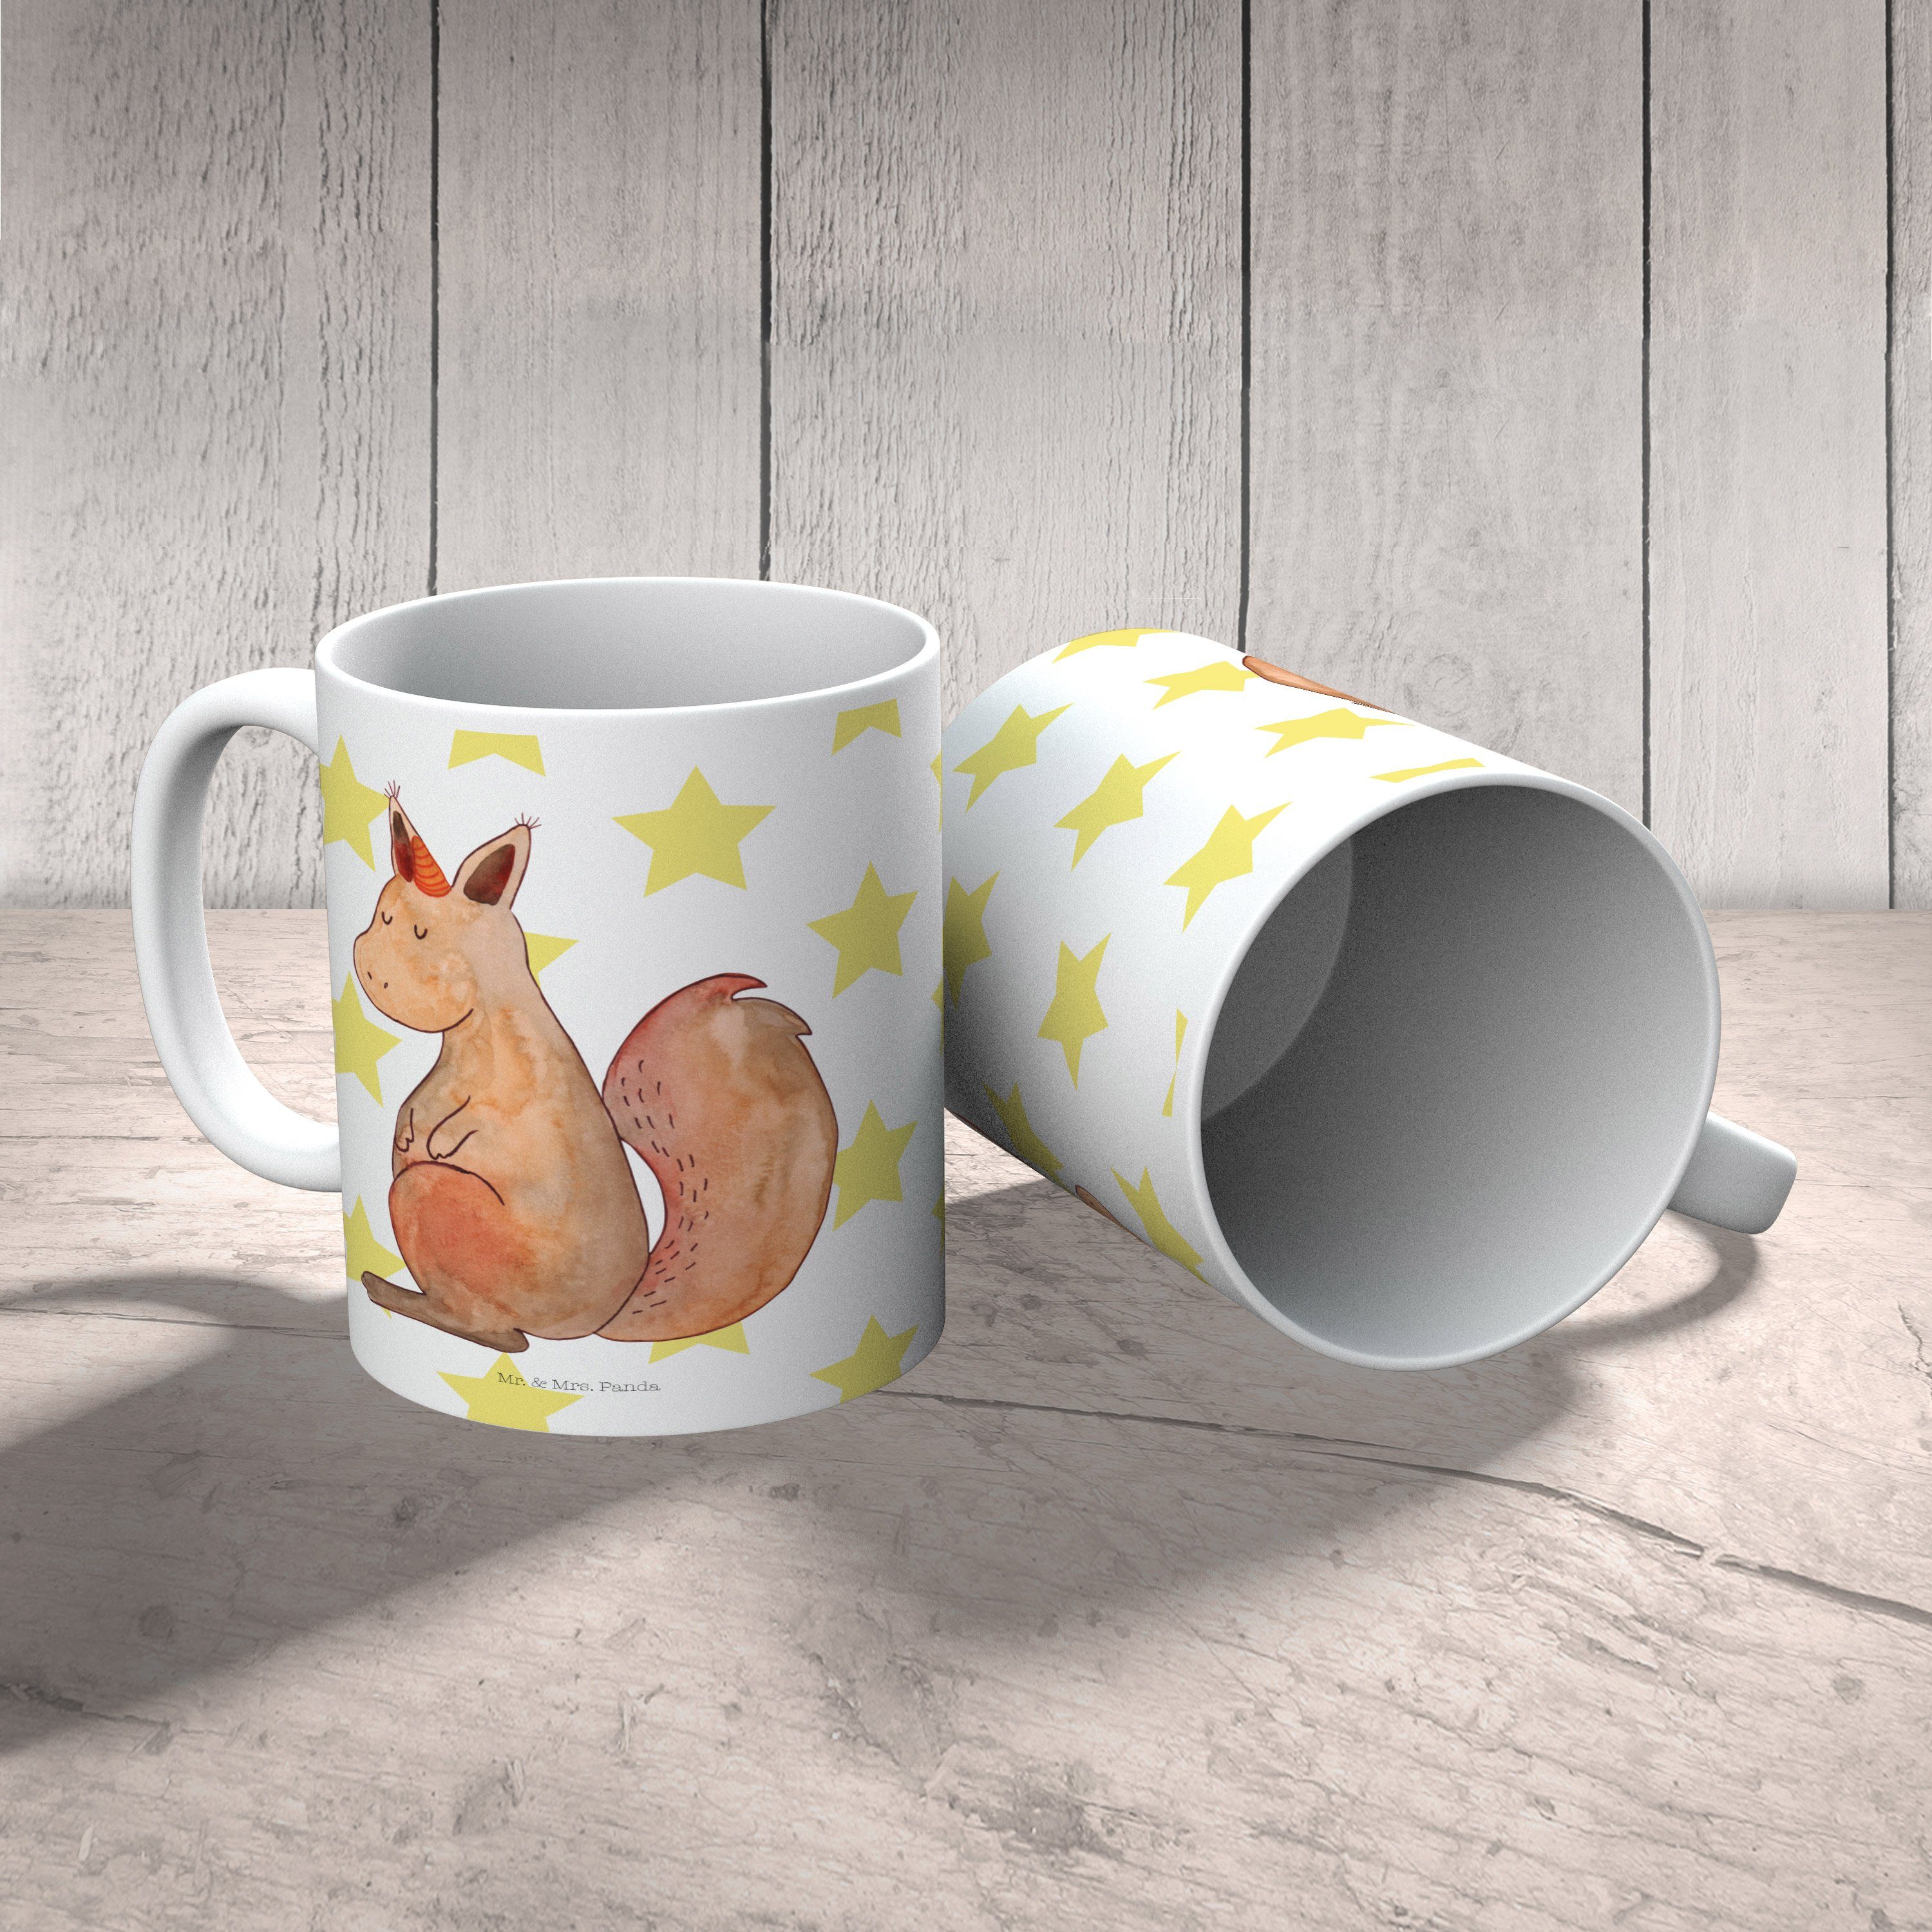 Mr. & Mrs. Panda Tasse Weiß E, Glaube - Kaffeebecher, Keramik Geschenk, Pegasus, Einhörnchen - Tasse